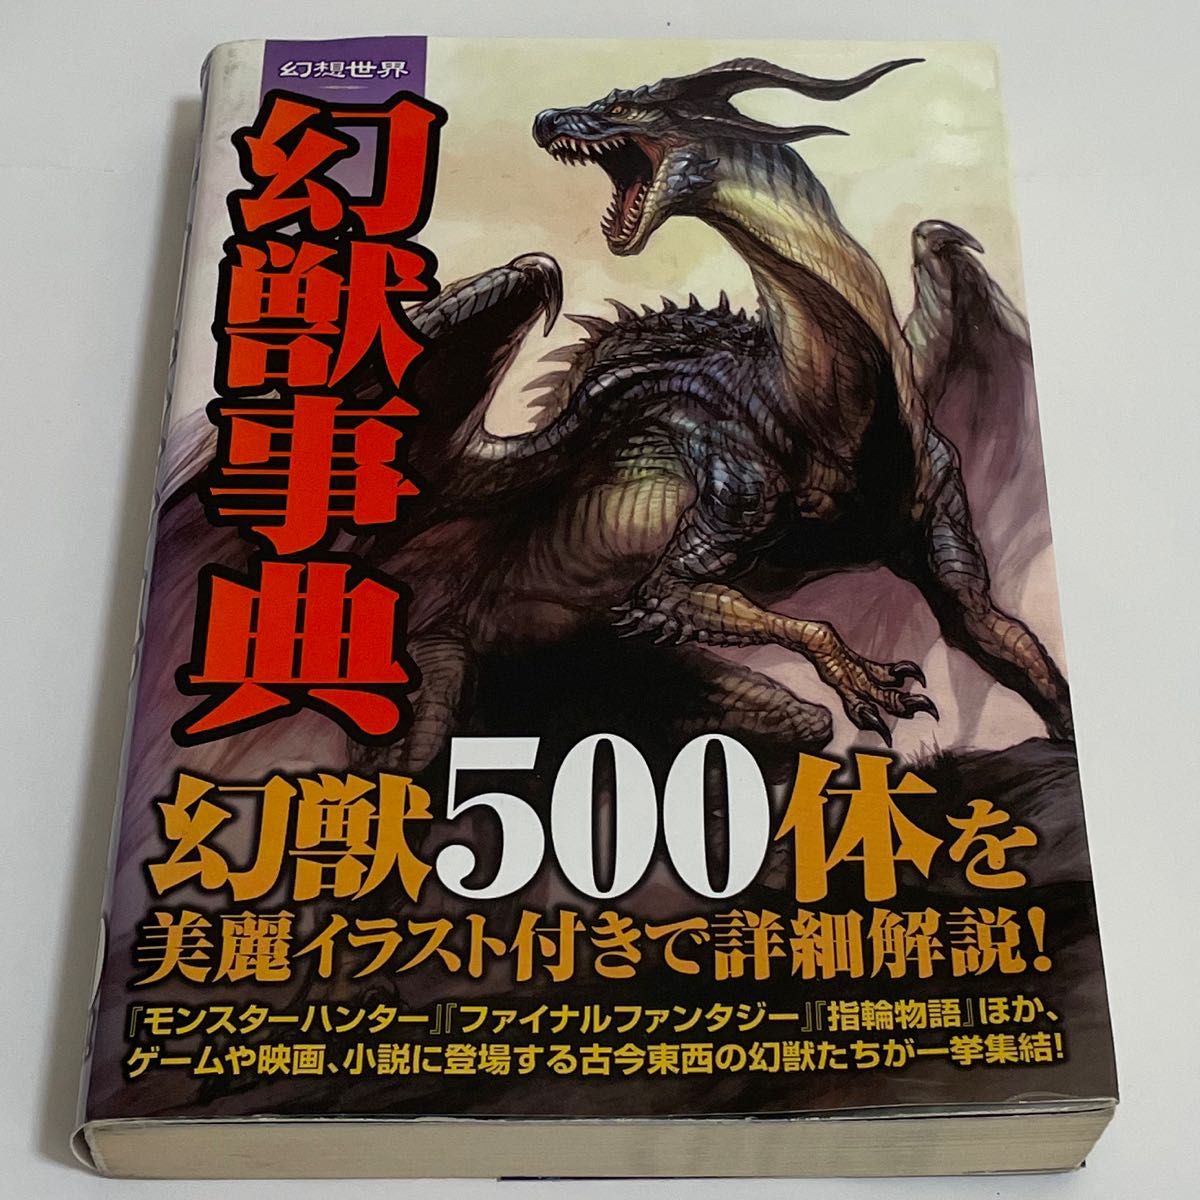 幻想世界幻獣事典 : モンスターの美麗イラスト500体収録!!